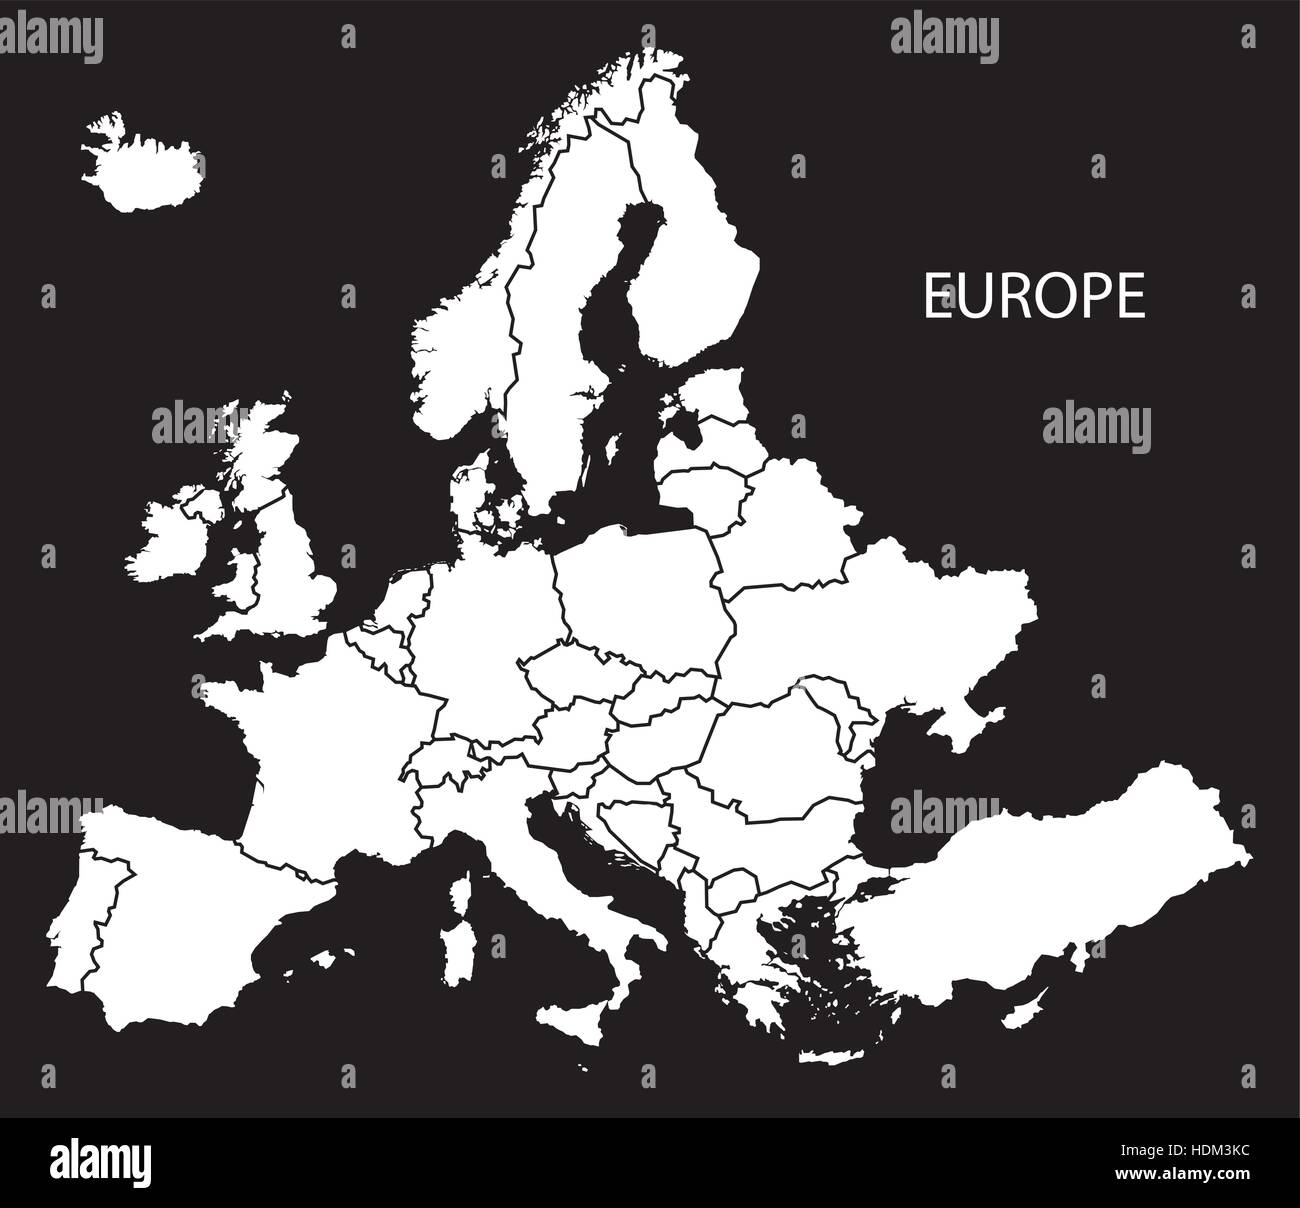 weltkarte europa schwarz weiß Europa Mit Lander Karte Schwarz Weiss Abbildung Stock Vektorgrafik Alamy weltkarte europa schwarz weiß